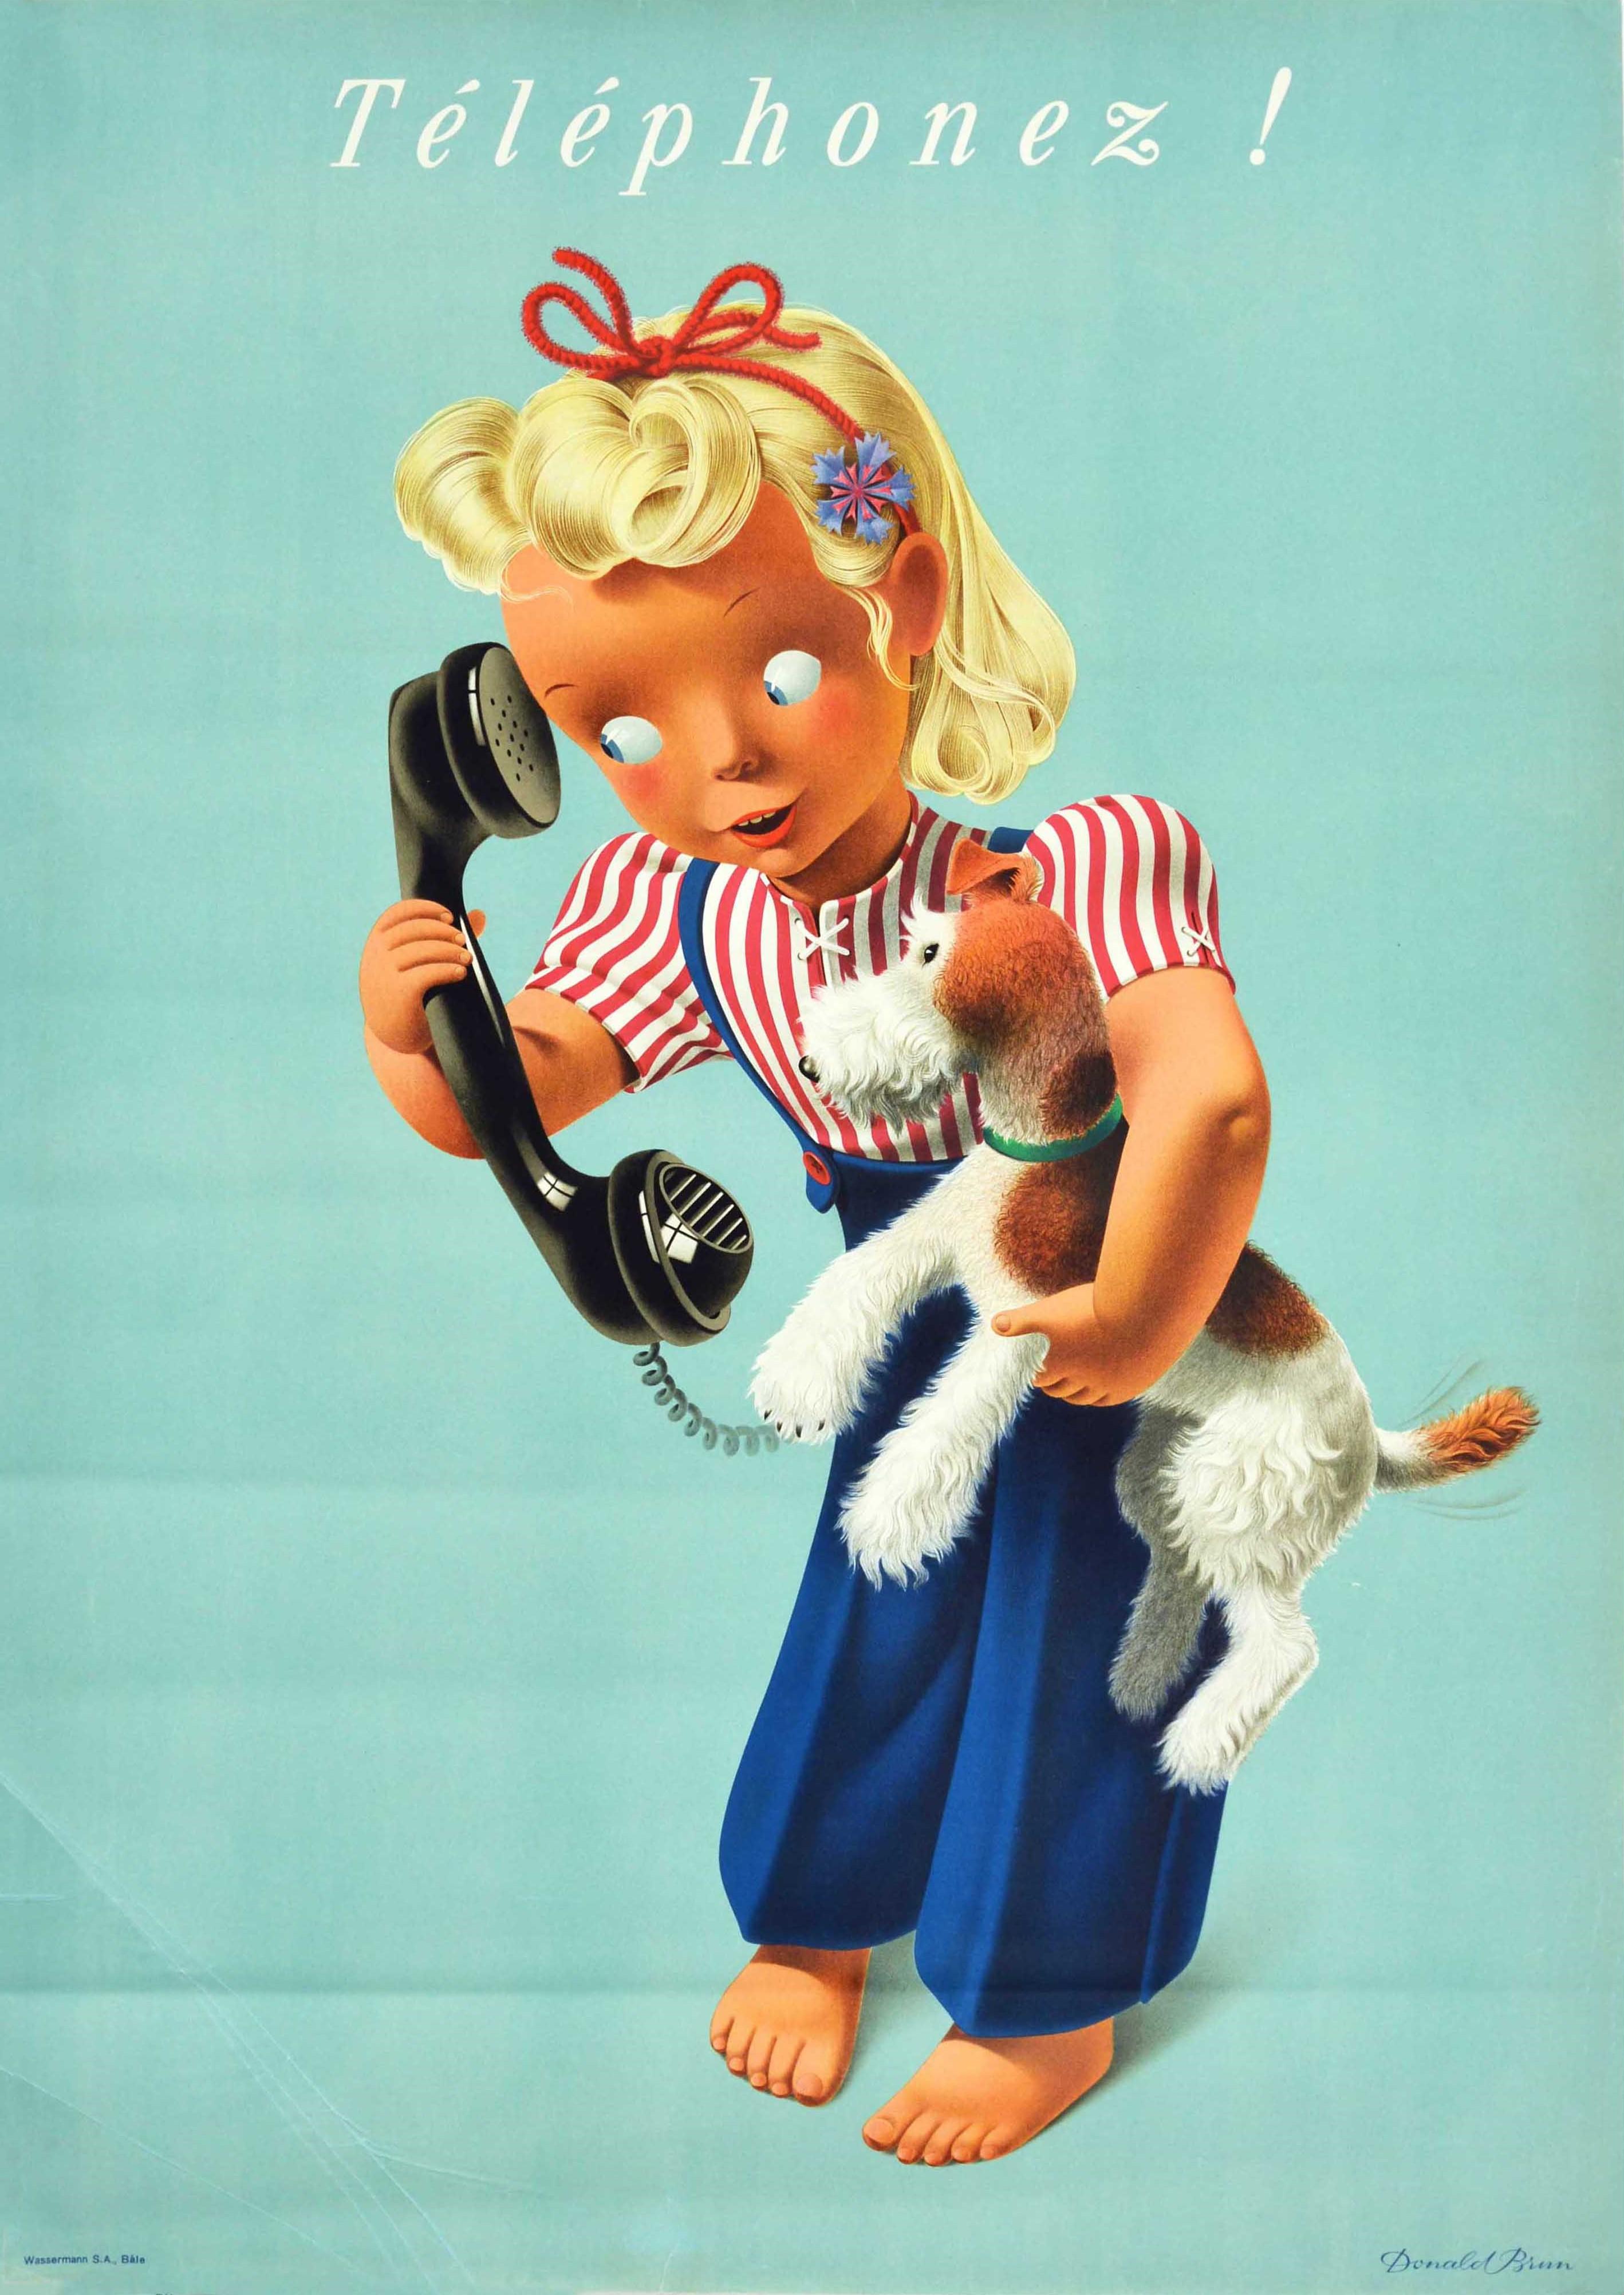 Print Donald Brun - Affiche vintage originale Telephonez ! Art publicitaire suisse des téléphoniques, fille et chien